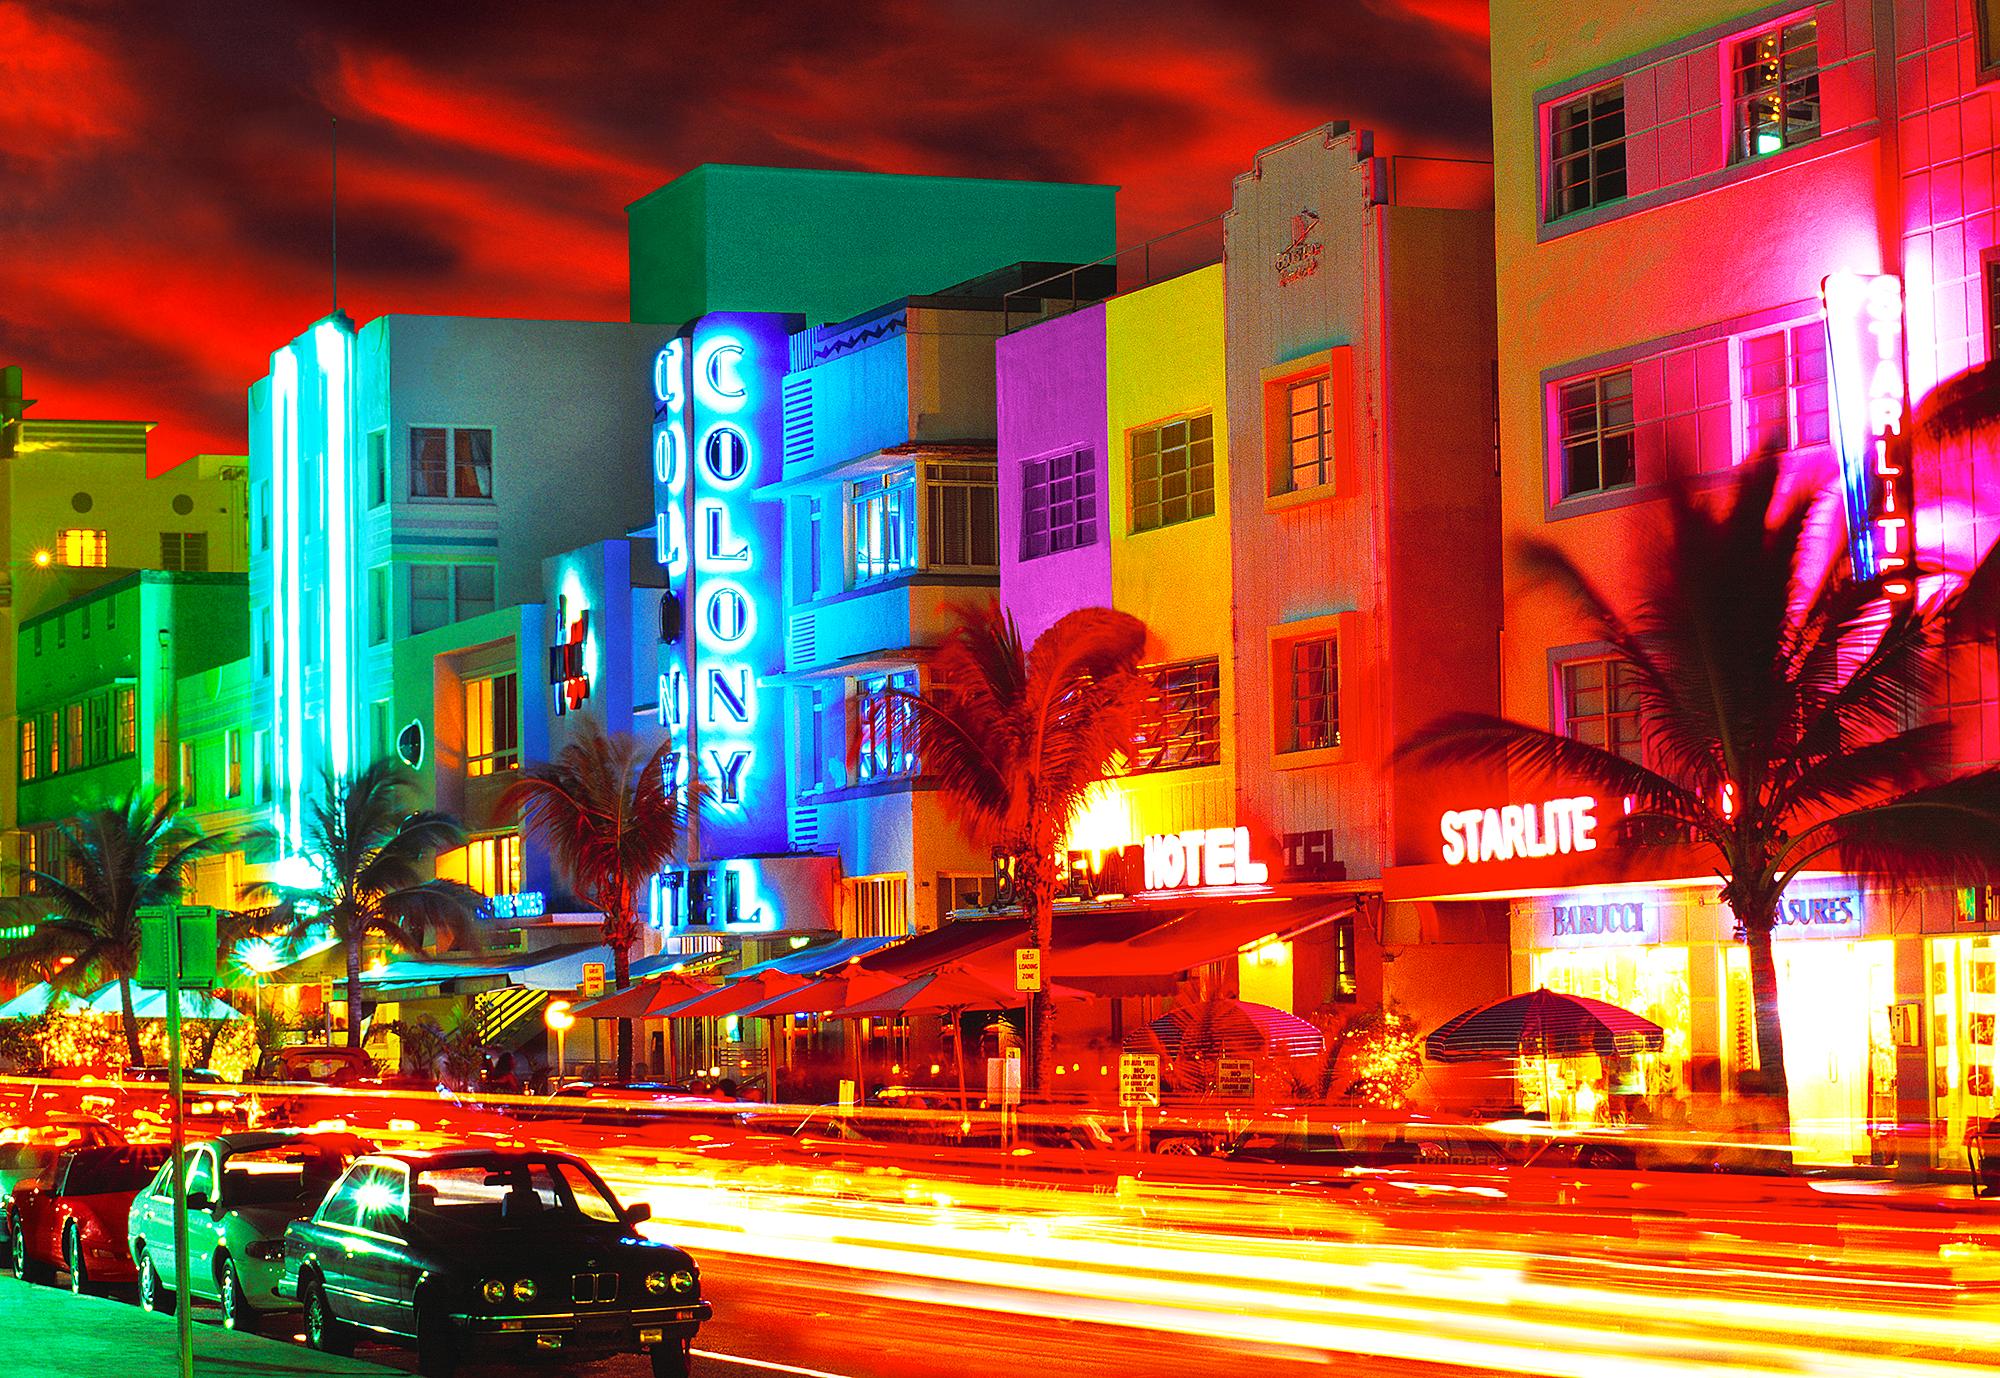 Der erfahrene Fotograf Mitchell Funk schafft ein ausdrucksstarkes Bild des Ocean Drive in Miami Beach.  Die verschwommene Farbe, der knallrote Himmel und die blutenden Art-Déco-Neonschilder sind die visuelle Entsprechung dessen, was South Beach